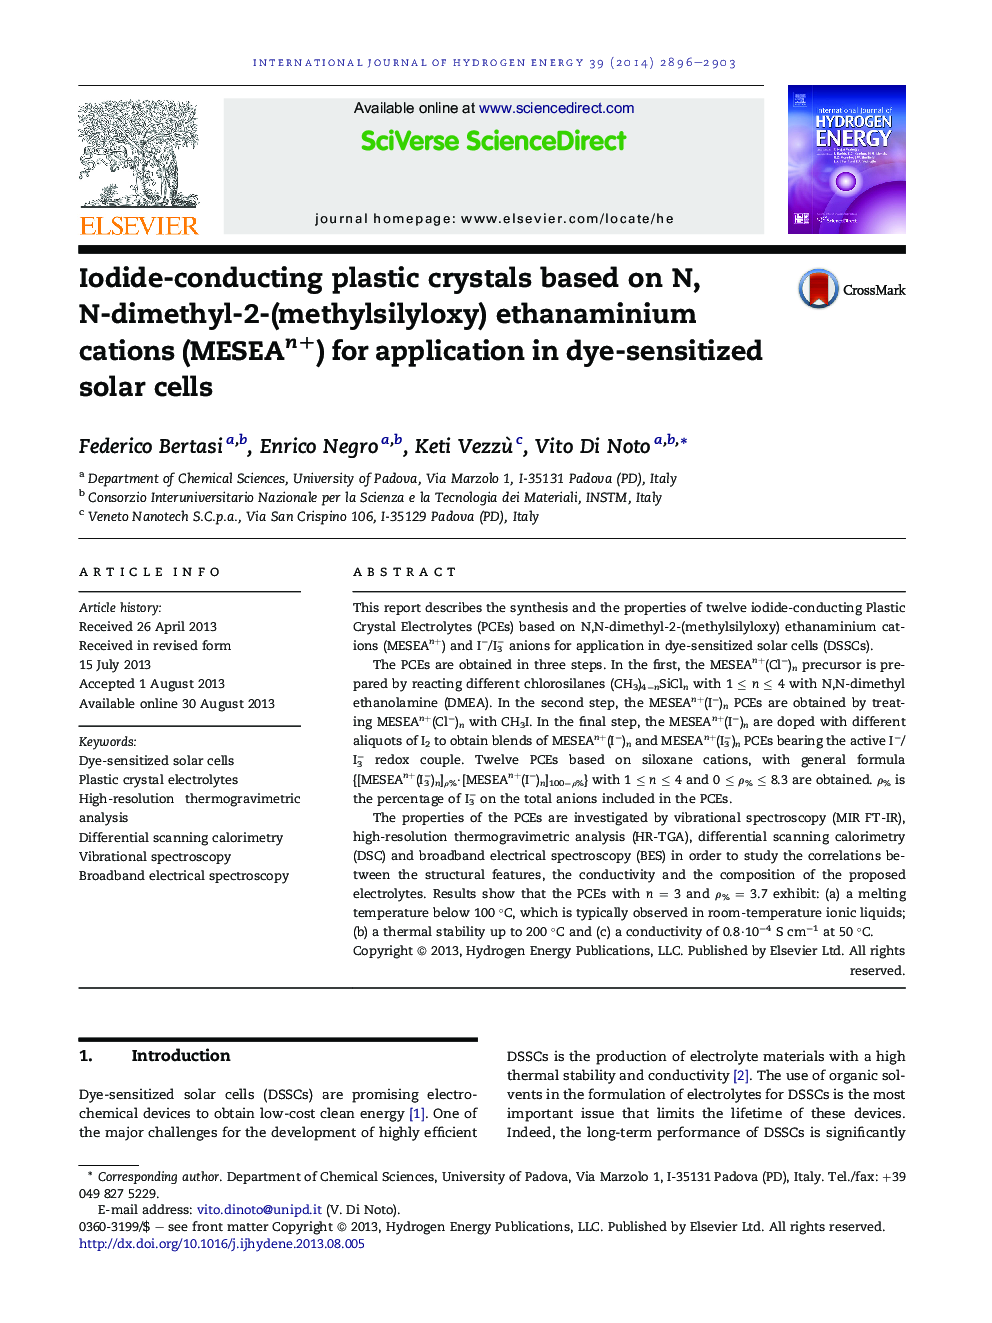 Iodide-conducting plastic crystals based on N,N-dimethyl-2-(methylsilyloxy) ethanaminium cations (MESEAn+) for application in dye-sensitized solar cells